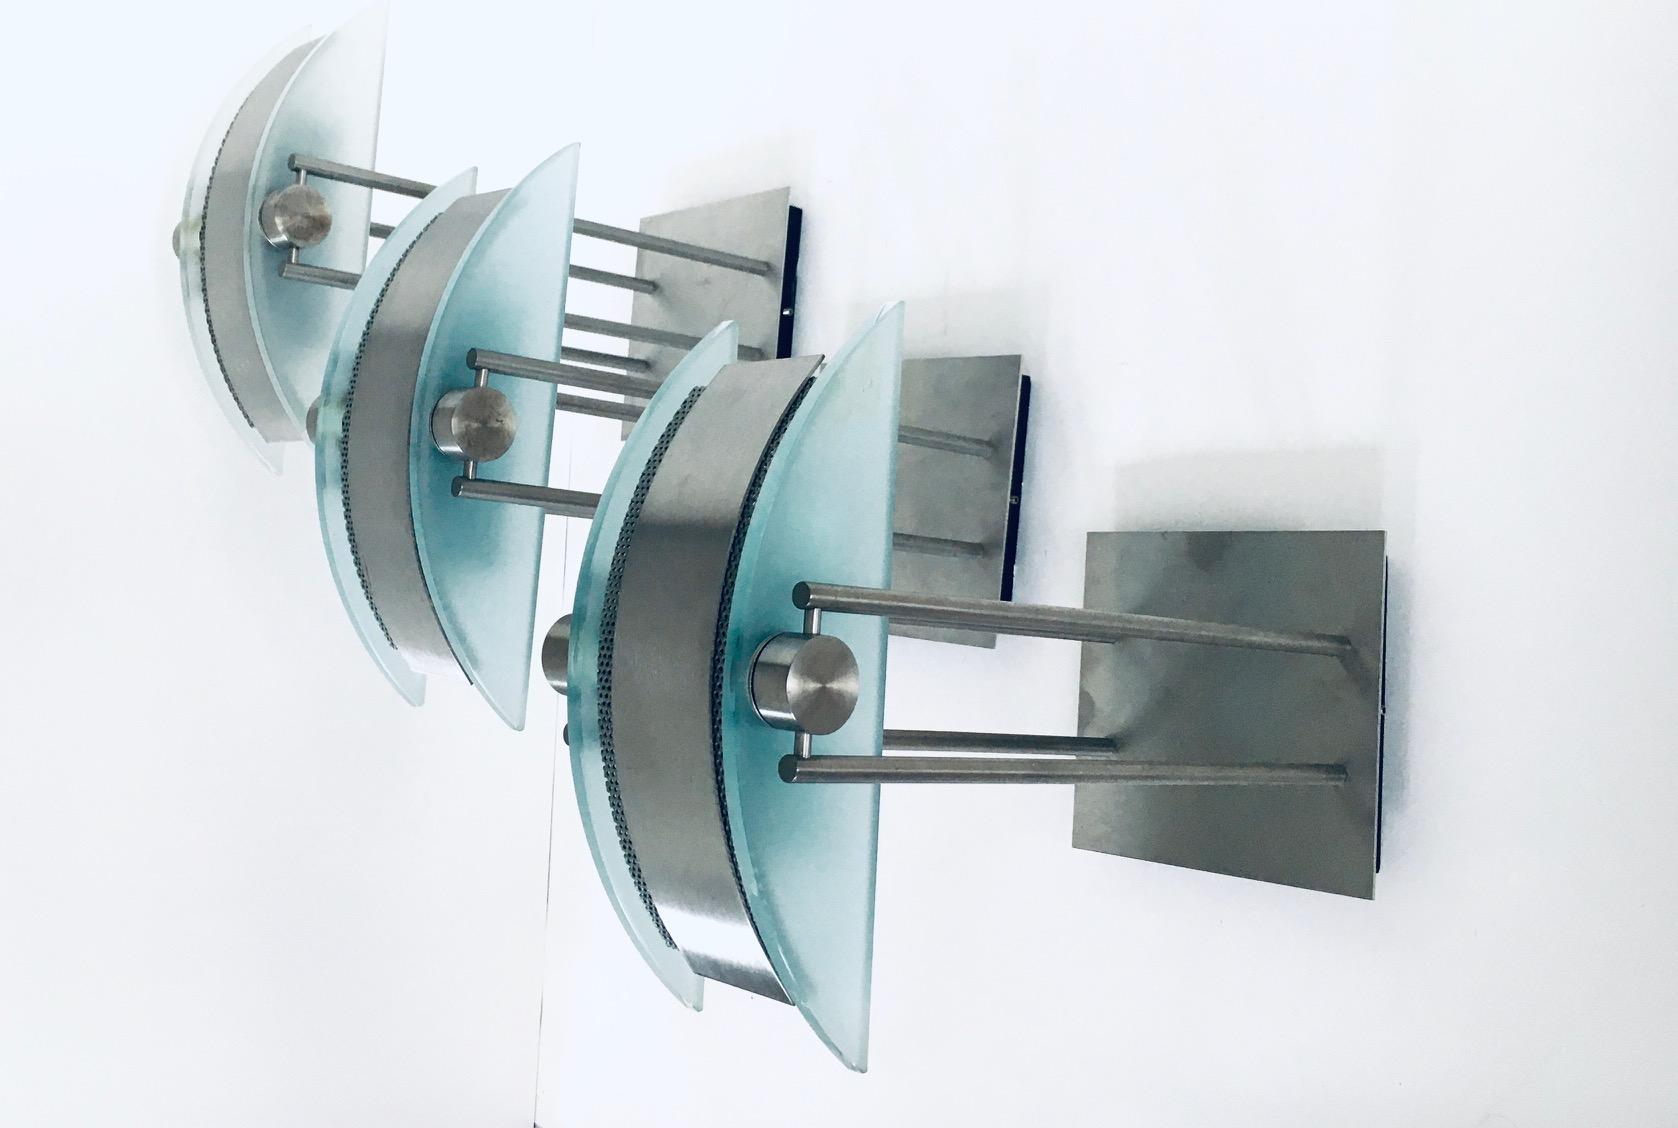 Ensemble de 3 appliques postmodernes de Moonlight Design, fabriquées en Belgique dans les années 1990. Applique halogène set de 3 lampes. Base en métal brossé avec verre dépoli en forme de demi-lune et tôle perforée fabriquée à la machine. Vous